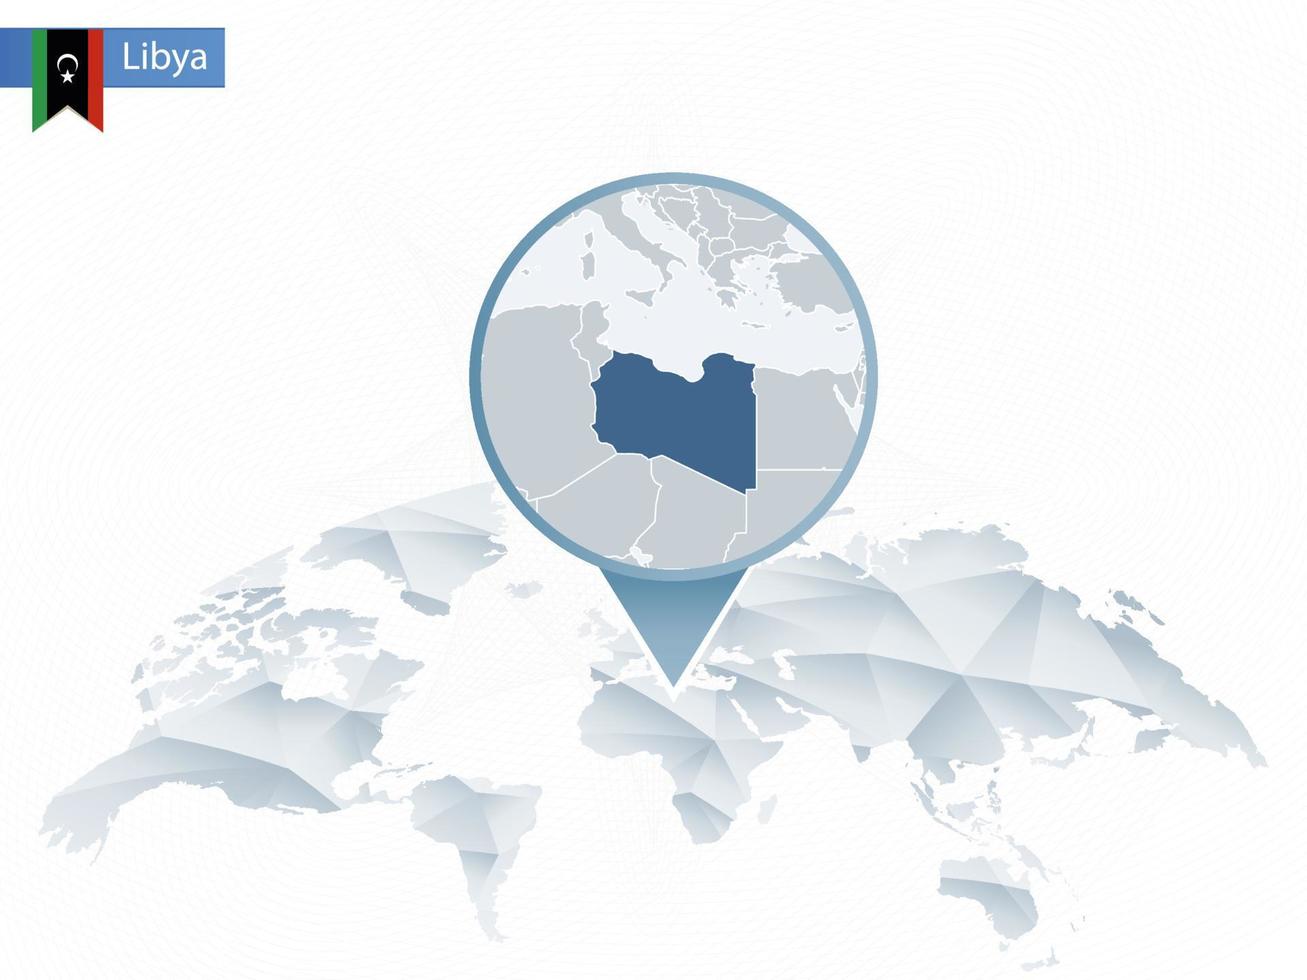 carte du monde arrondie abstraite avec carte détaillée de la libye épinglée. vecteur